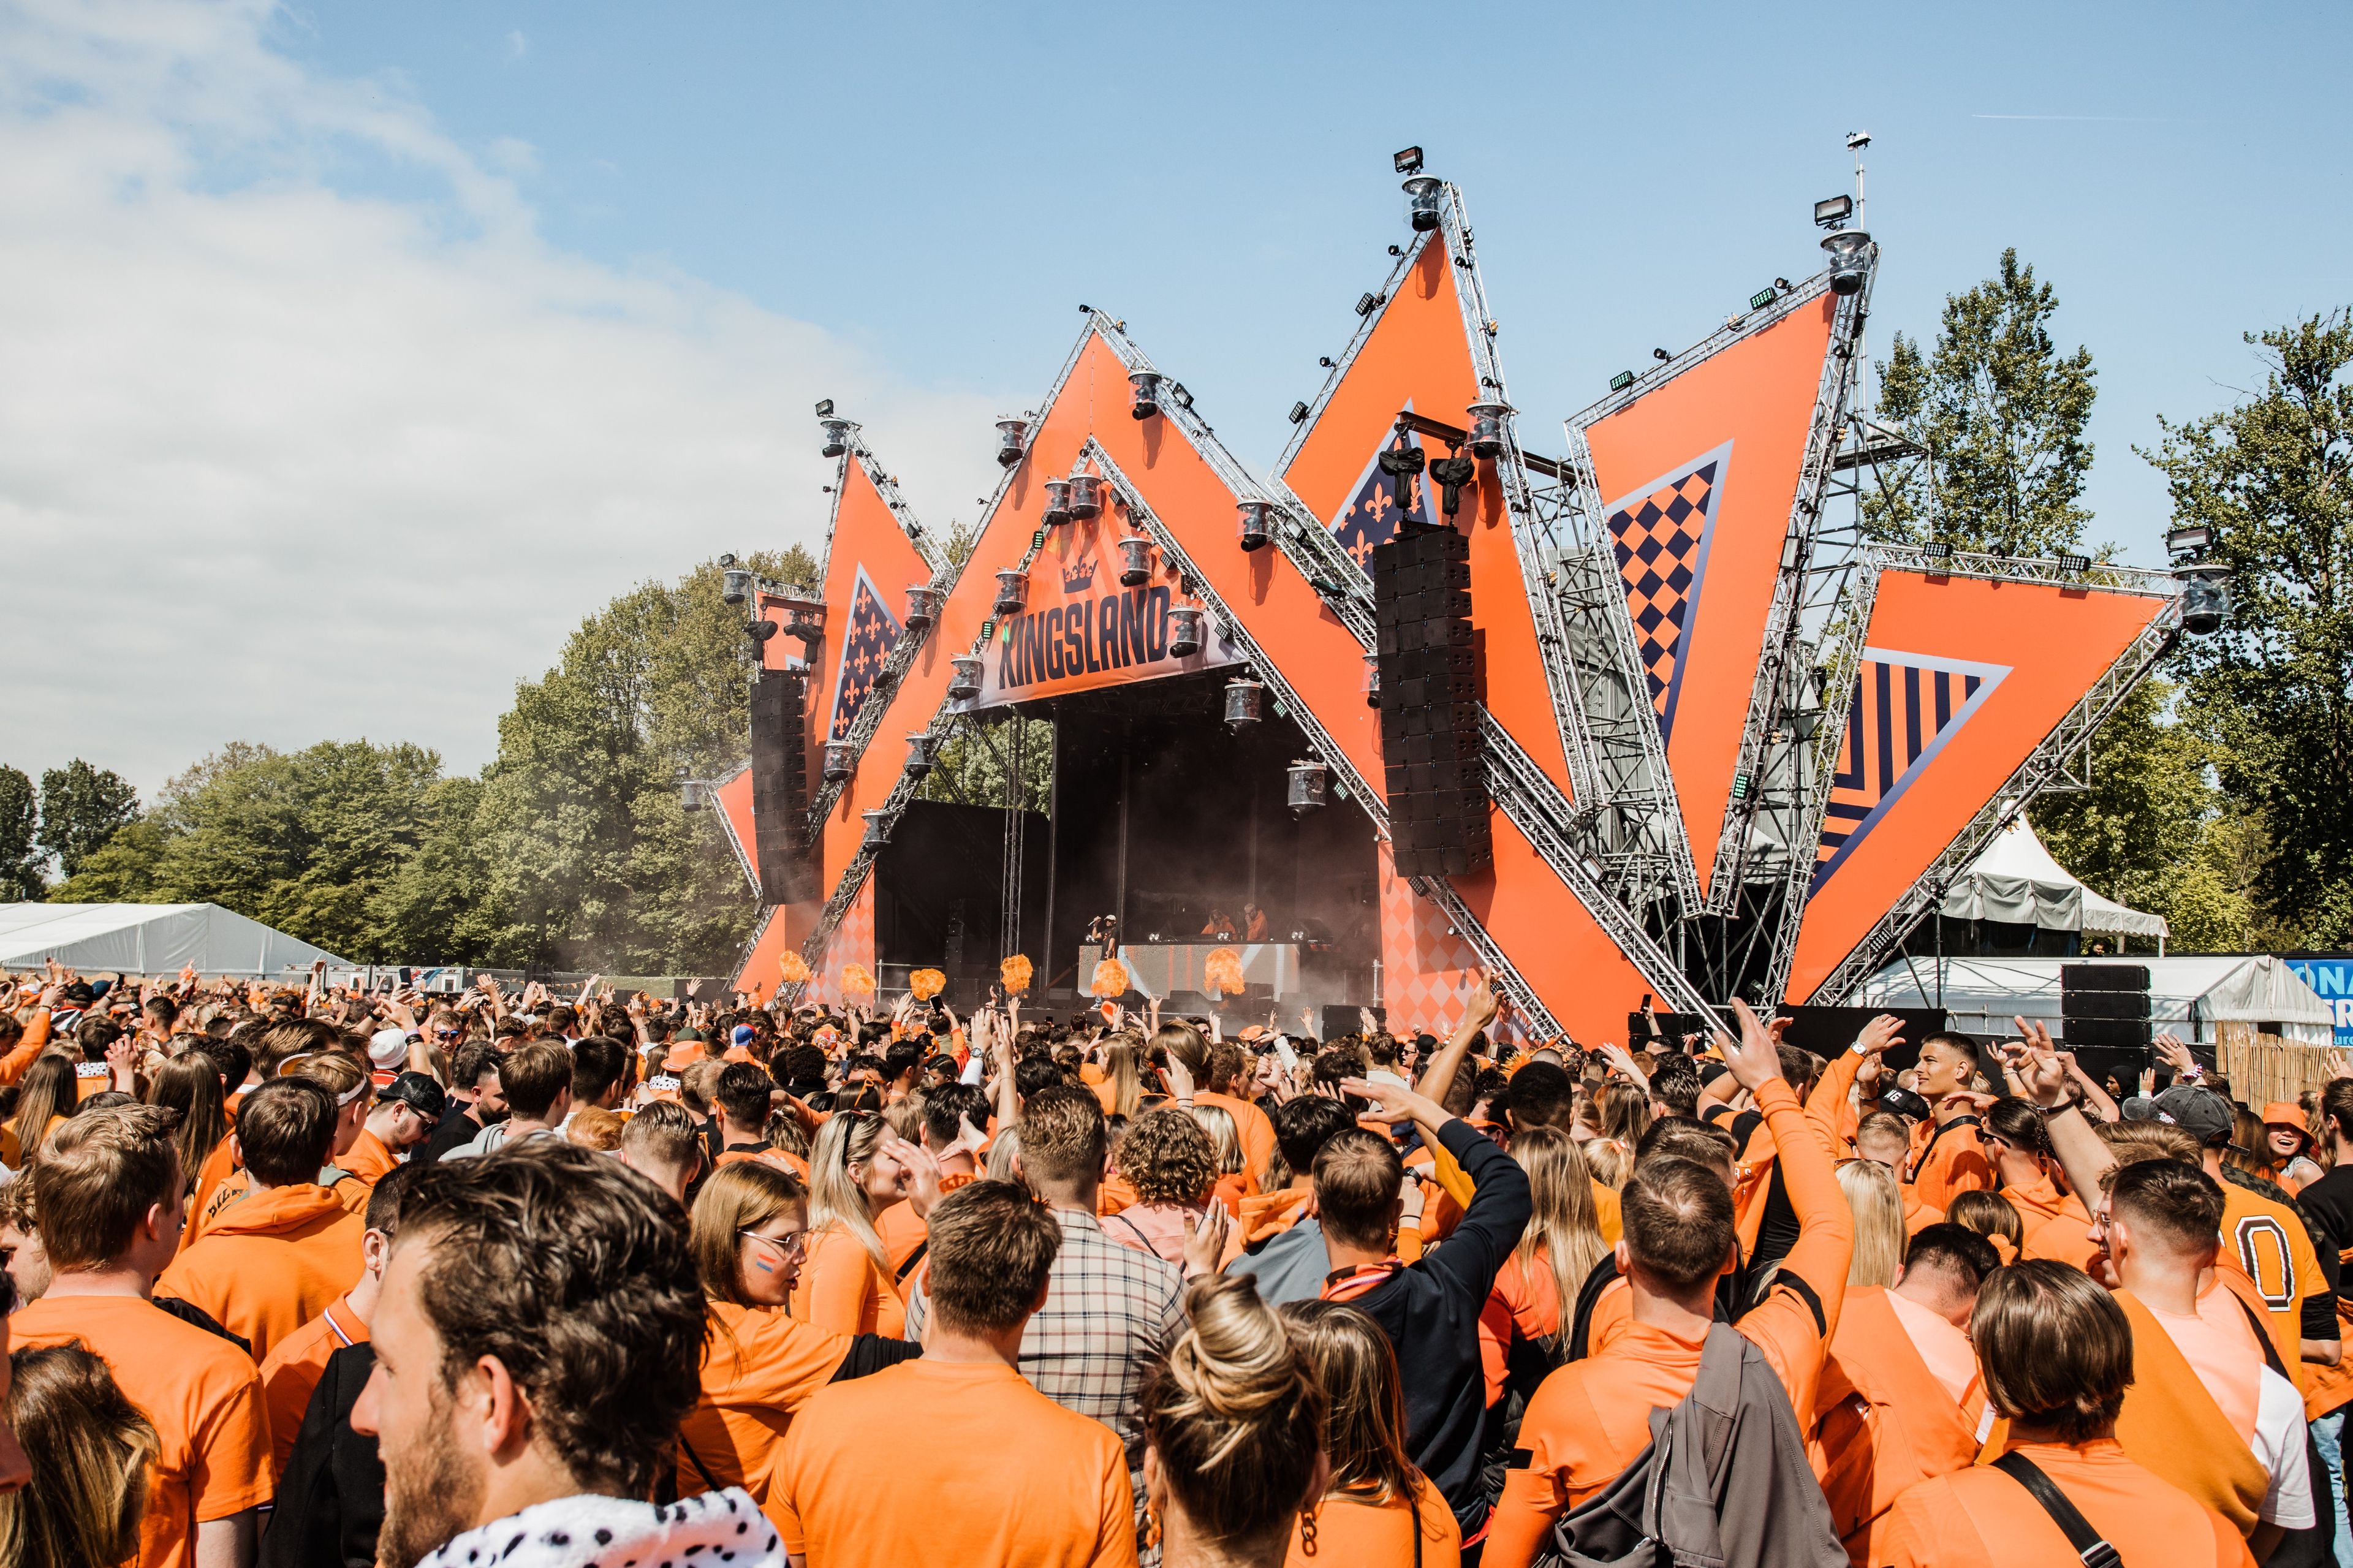 Imagen del tour: Festival Kingsland de Rotterdam